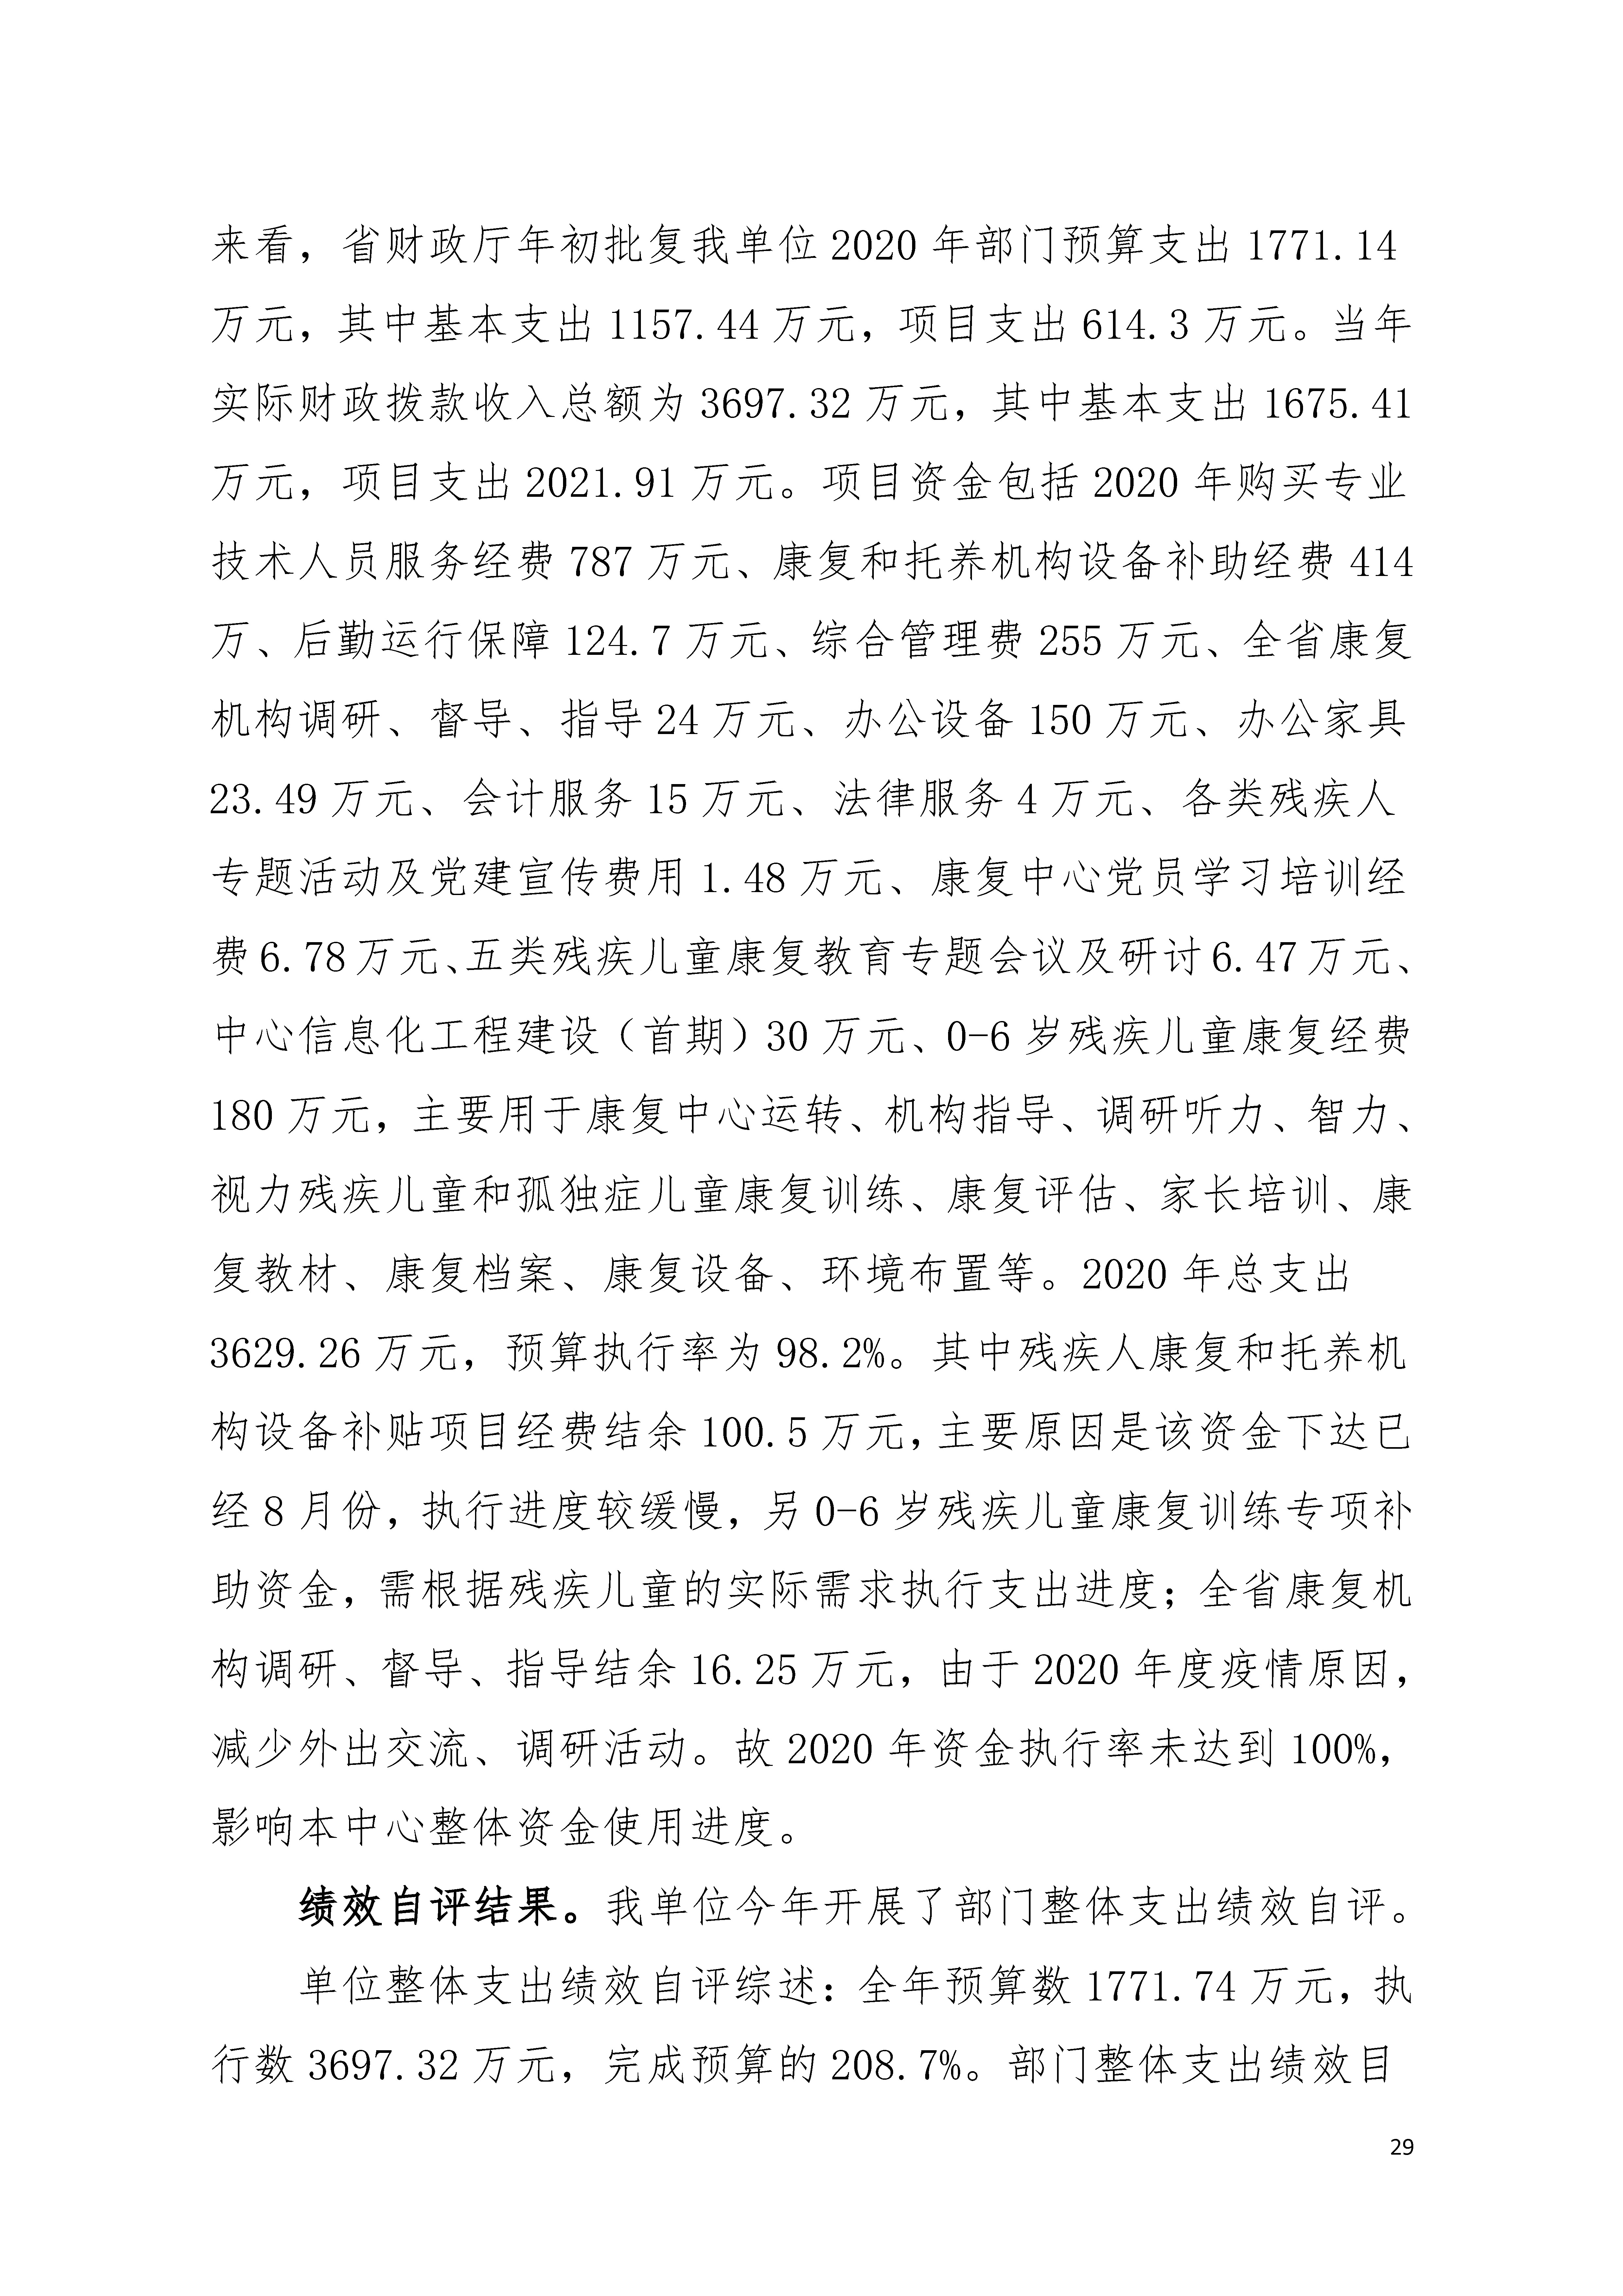 2020年广东省残疾人康复中心部门决算_页面_29.jpg